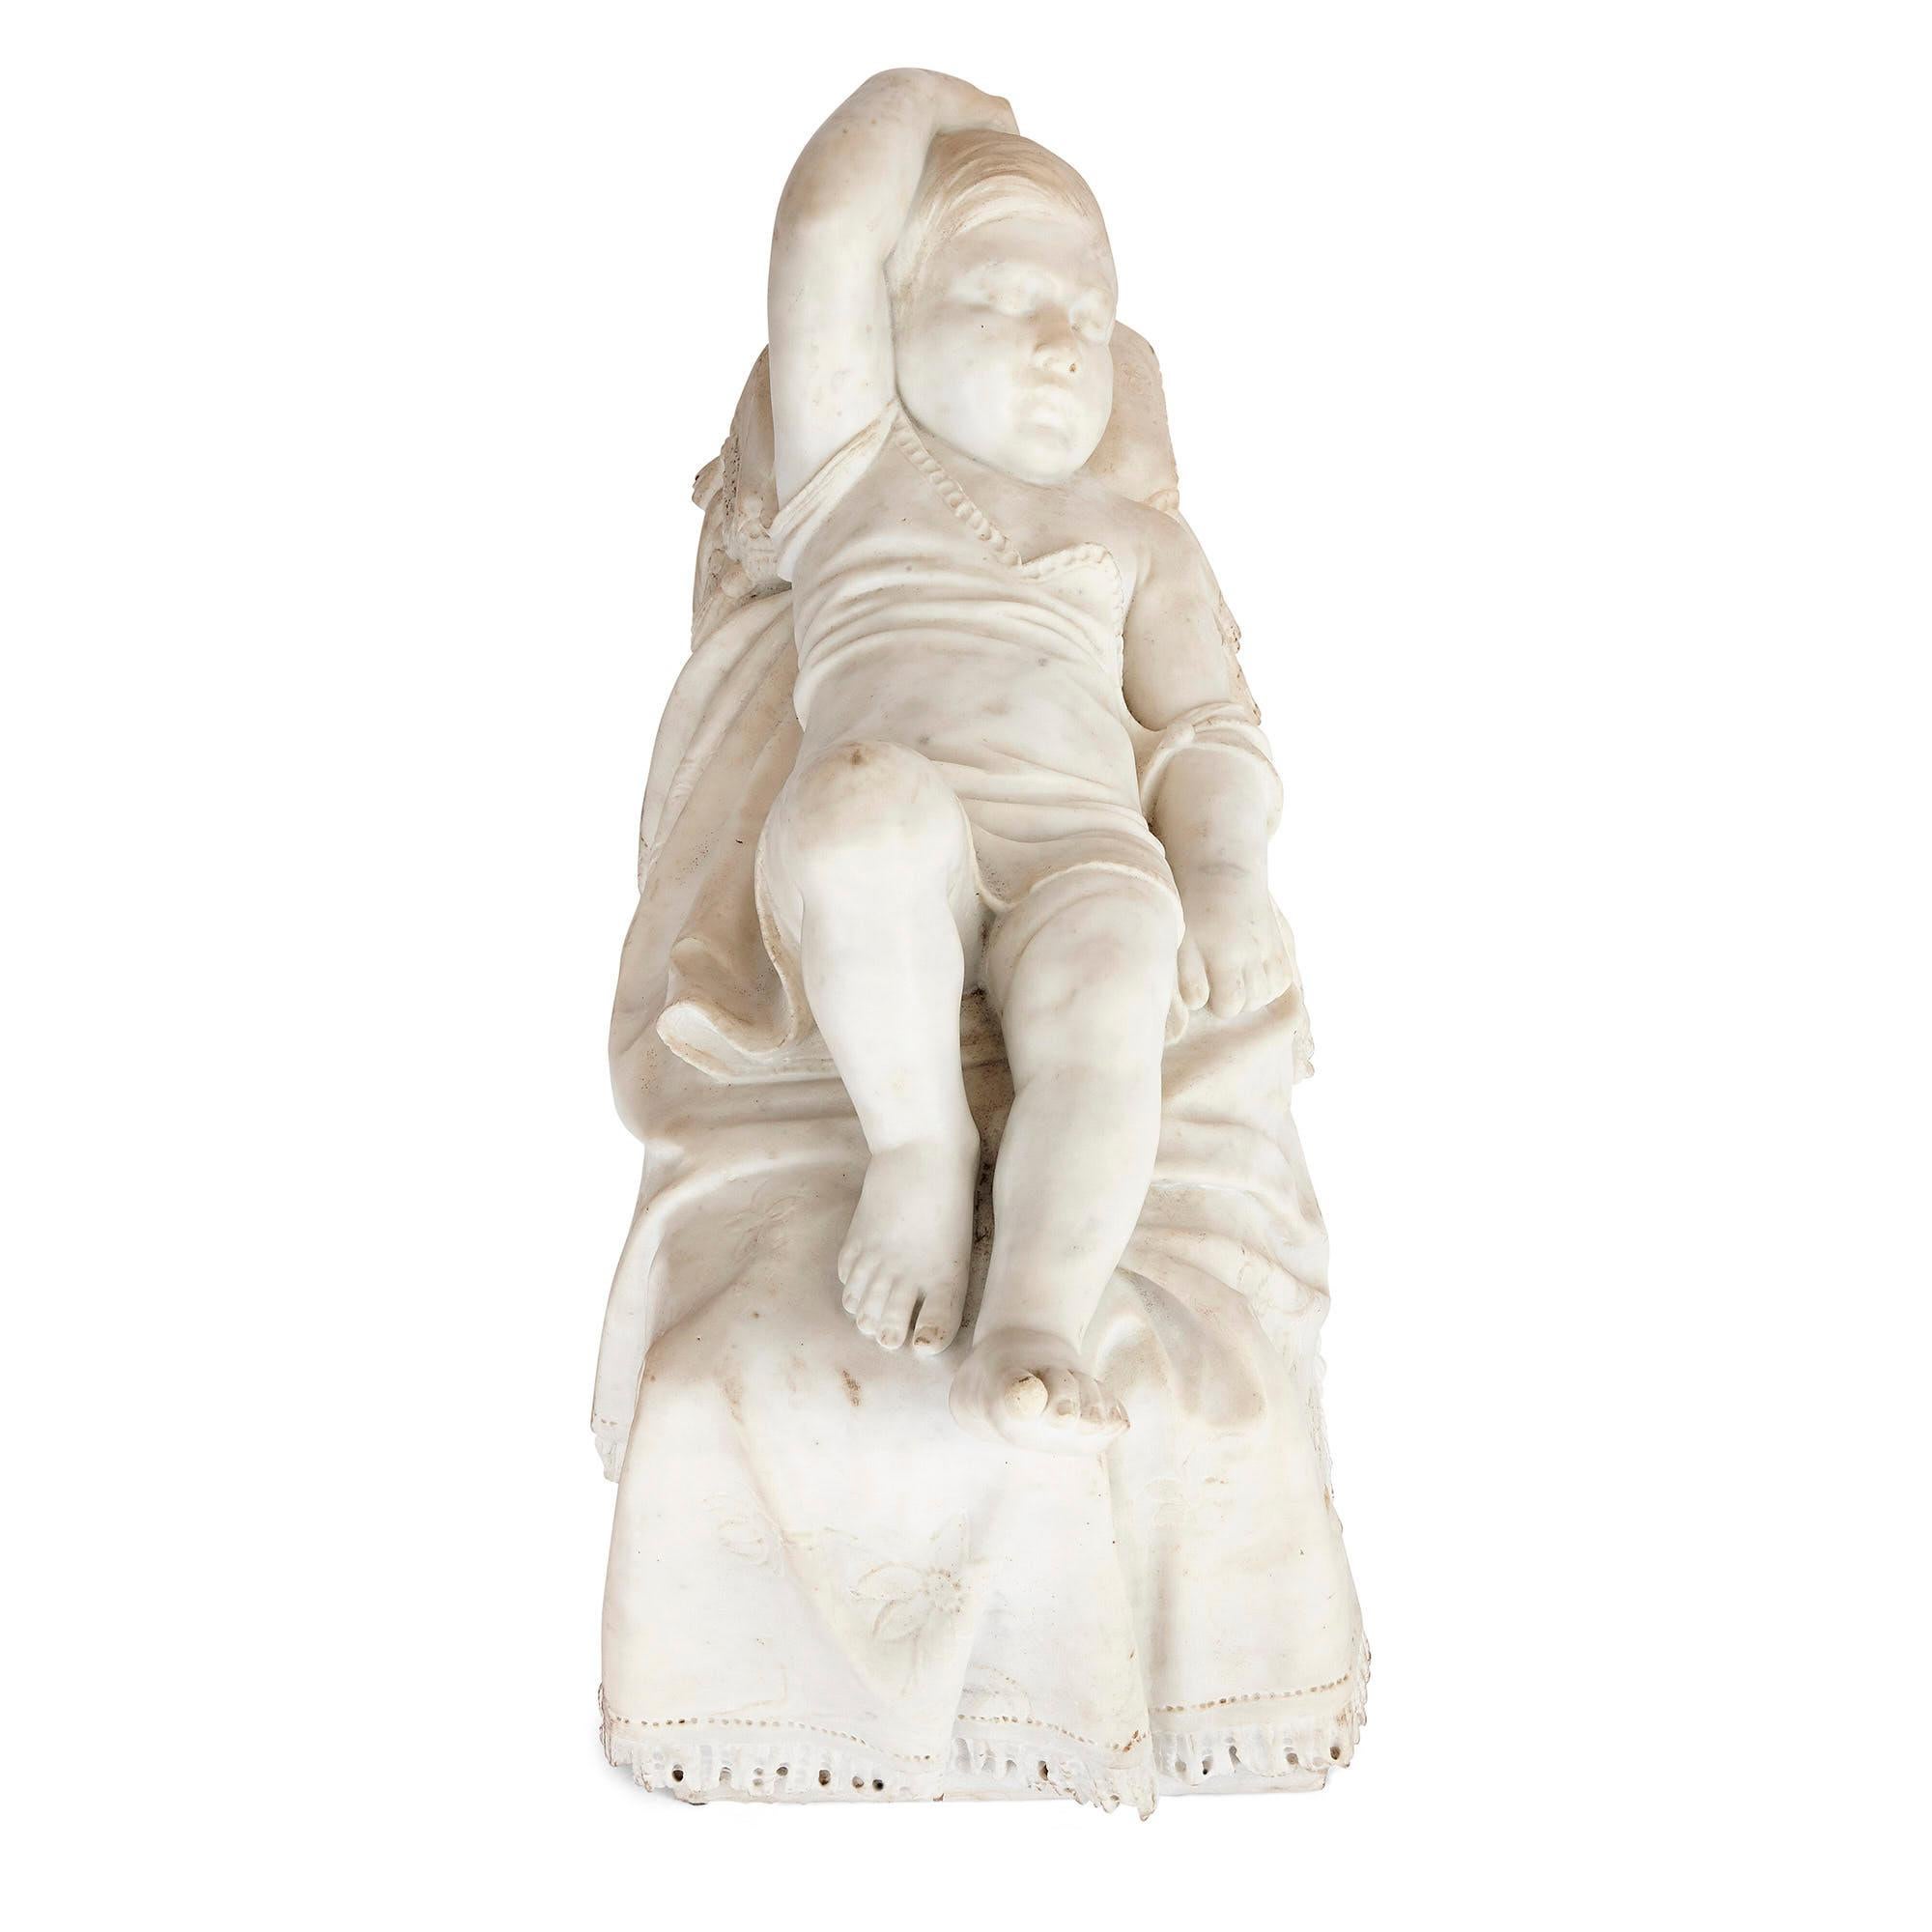 Antike italienische Skulptur eines schlafenden Kindes aus dem 19.
Italienisch, 19. Jahrhundert
Maße: Höhe 44cm, Breite 72cm, Tiefe 30cm

Diese wunderschöne italienische Skulptur ist aus weißem Marmor gemeißelt. Die Skulptur stellt ein kleines